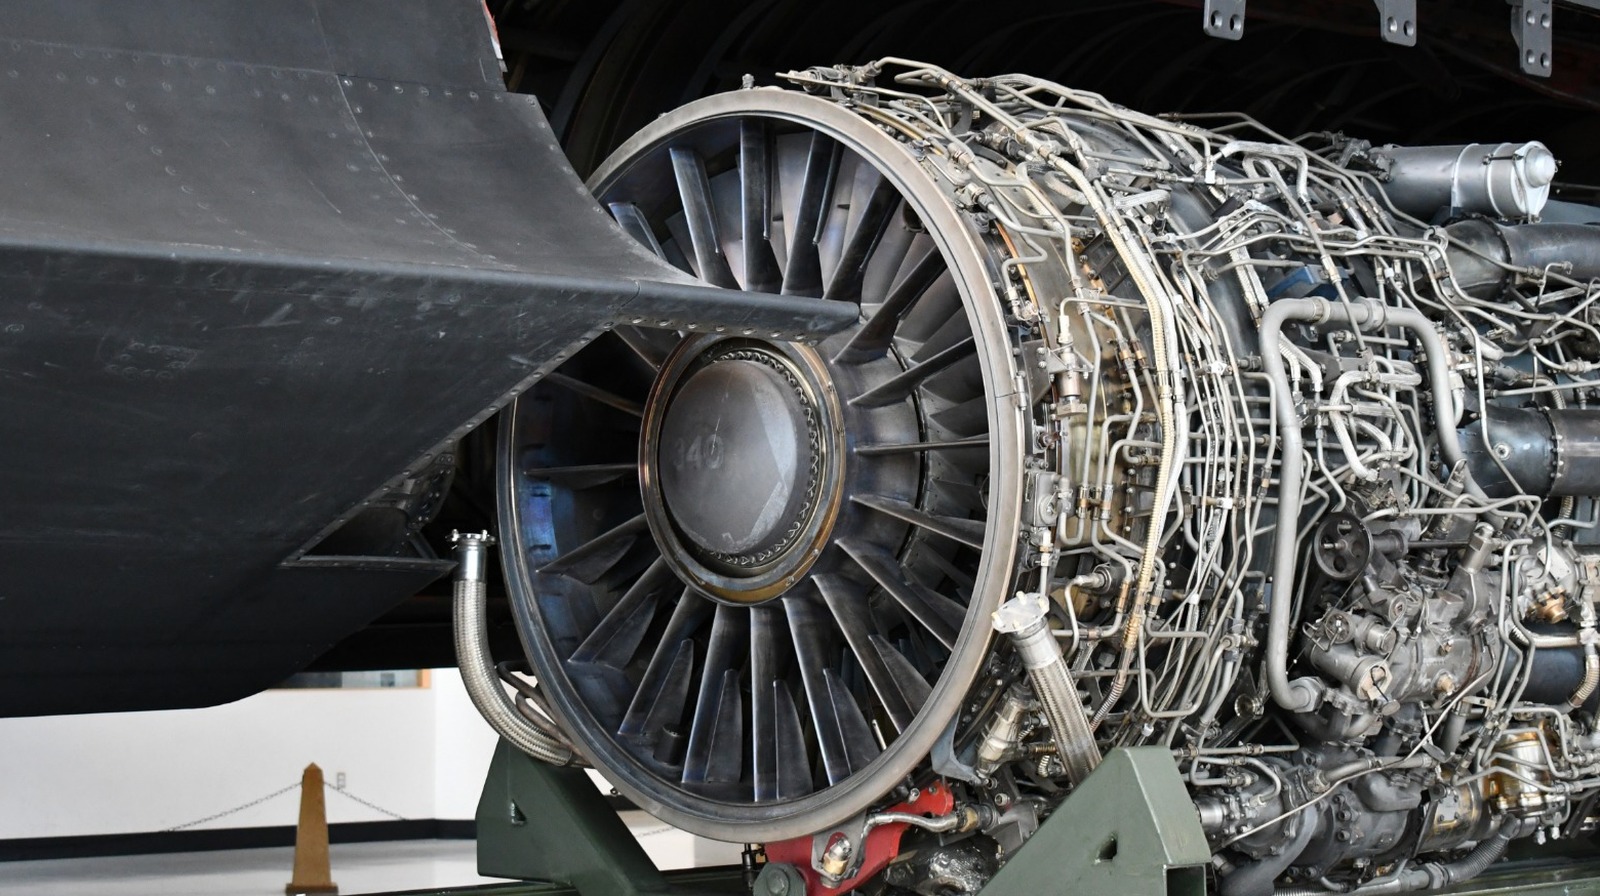 Todo lo que hay que saber sobre el motor turborreactor J58 que impulsa el SR-71 Blackbird